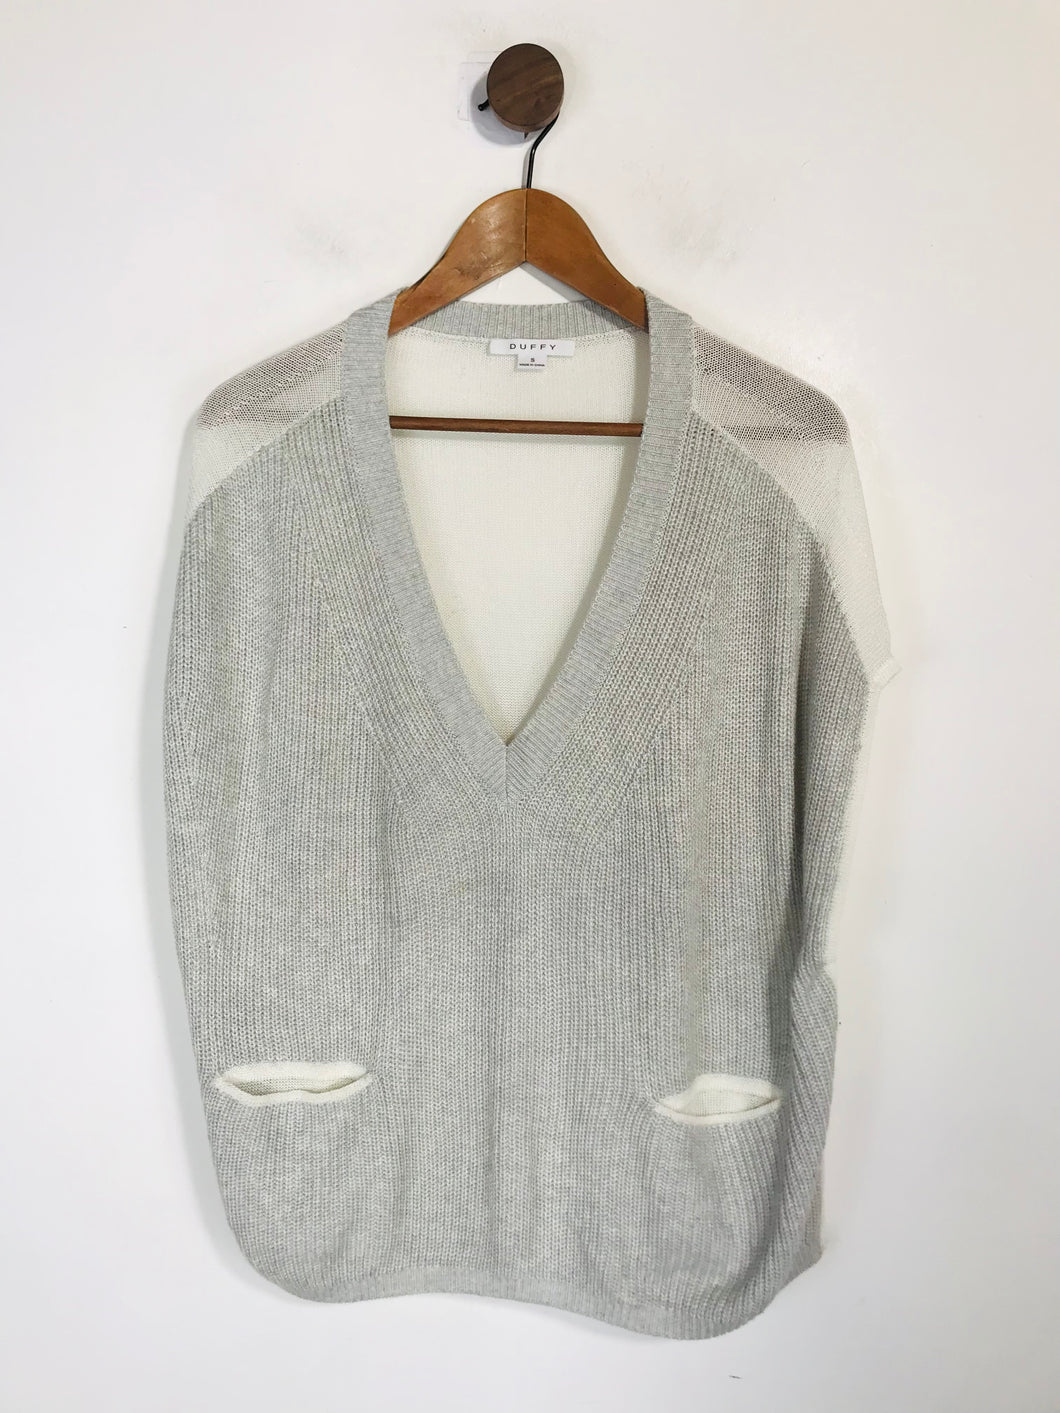 Duffy Women's Knit Sweater Vest | S UK8 | Grey